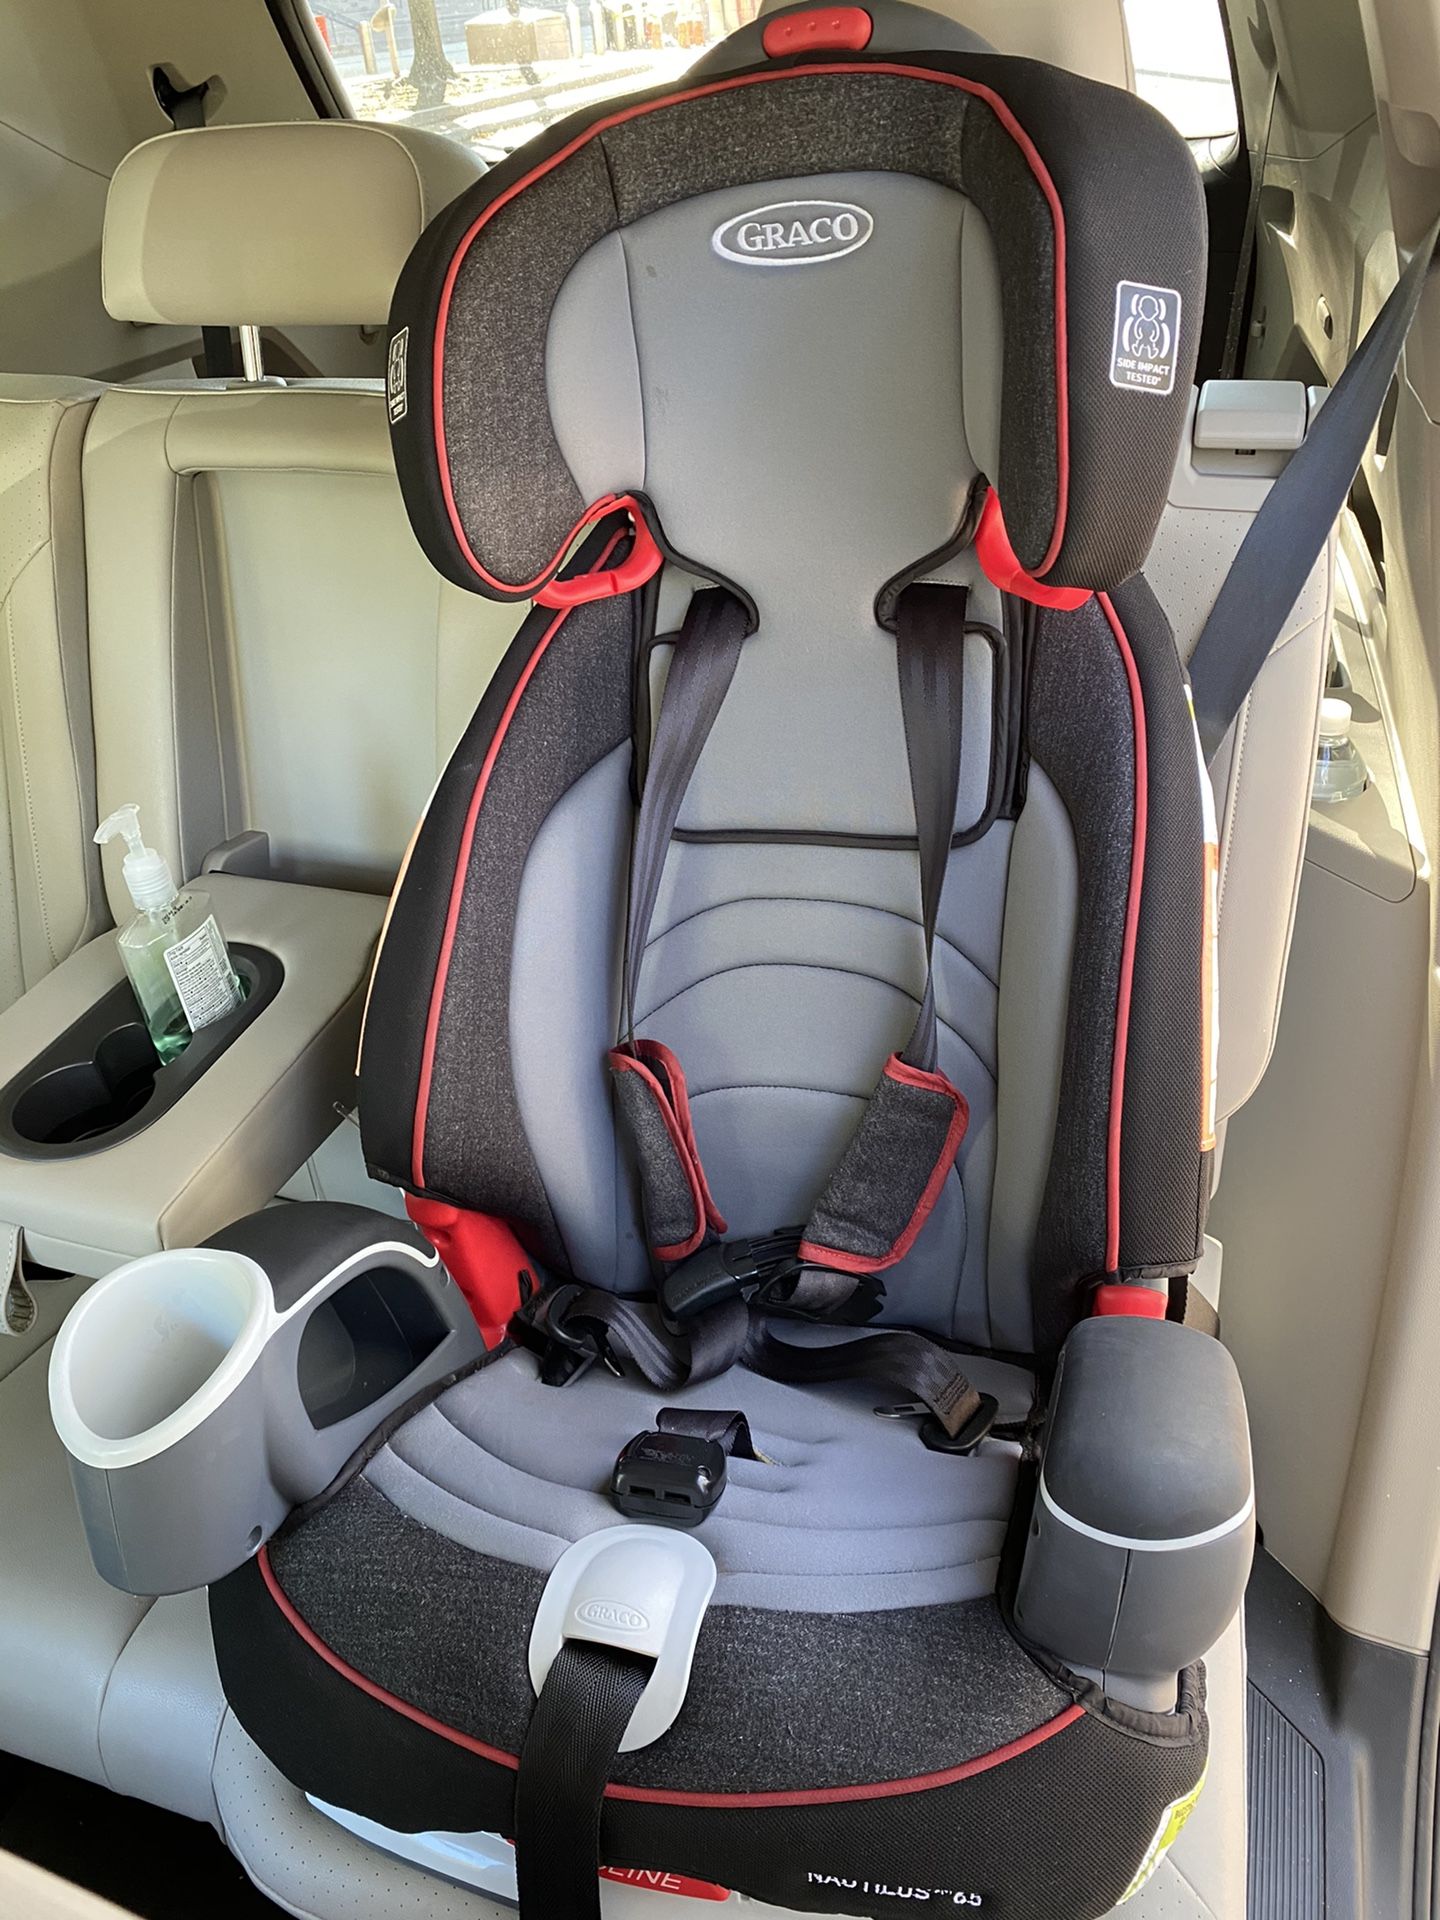 Graco Nautilus 65 3-in-1 car seat